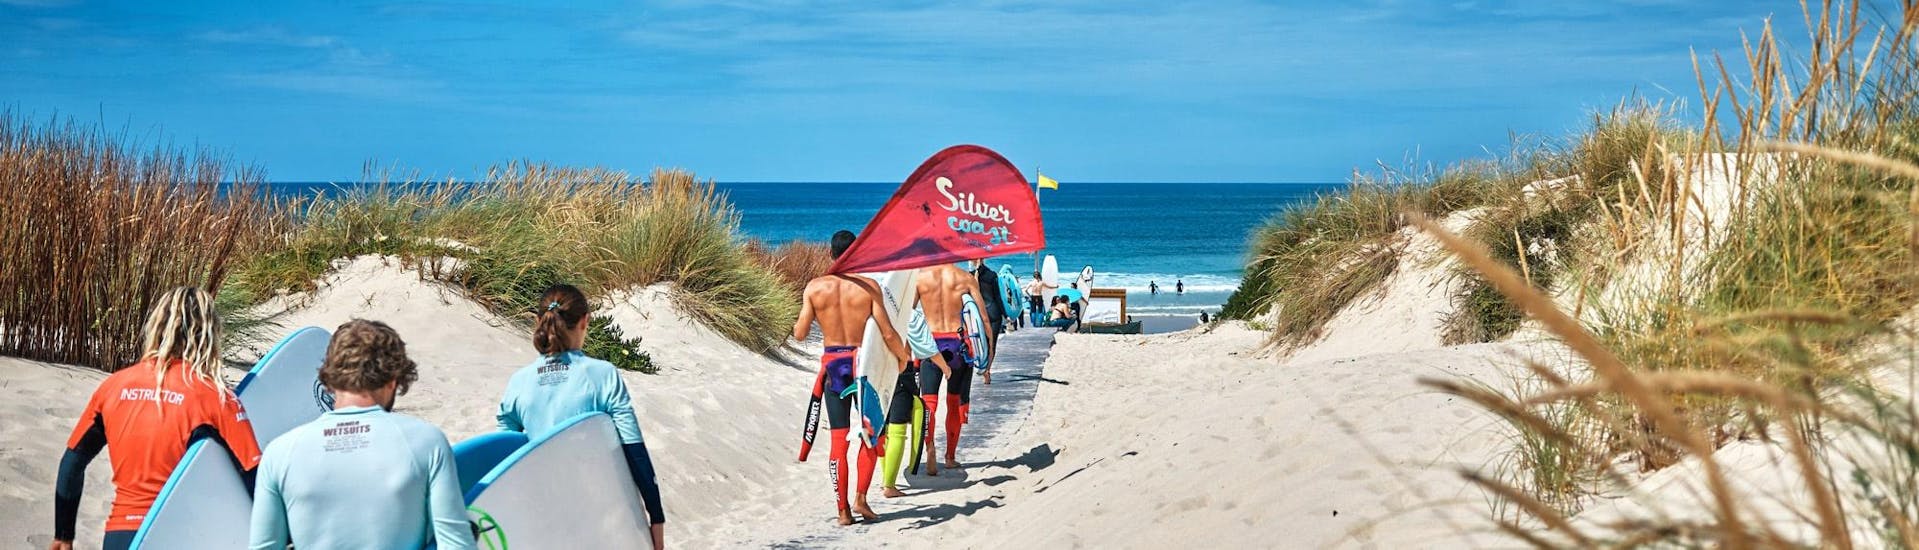 Eine Gruppe nimmt an Surfstunden mit der Silver Coast Surfschule in Peniche teil.